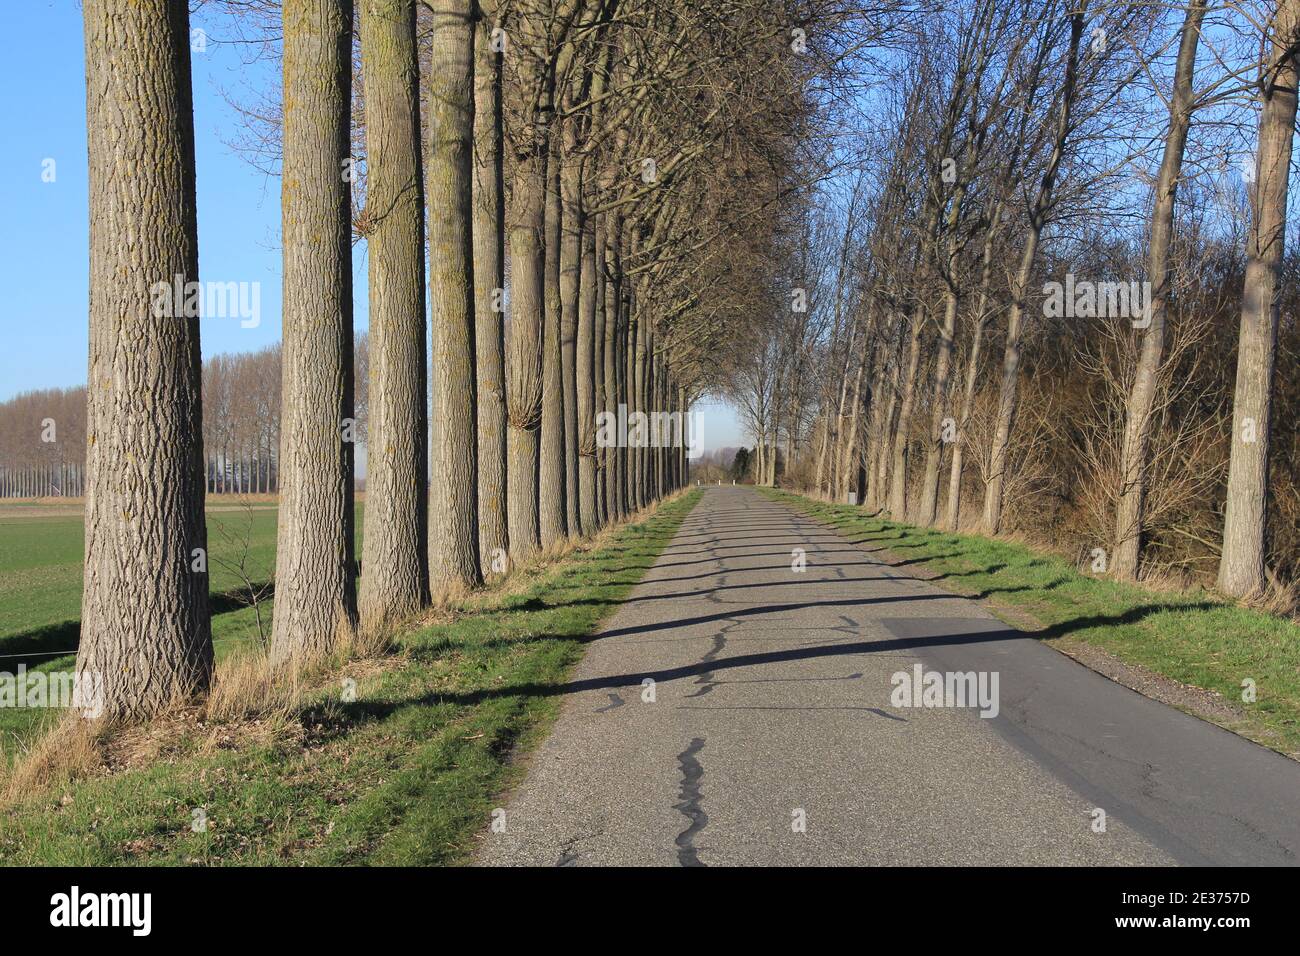 Typisch holländische Landschaft mit langen Reihen großer beliebter Bäume Neben einer Straße an einem Deich im Grünen In zeeland im Frühling Stockfoto